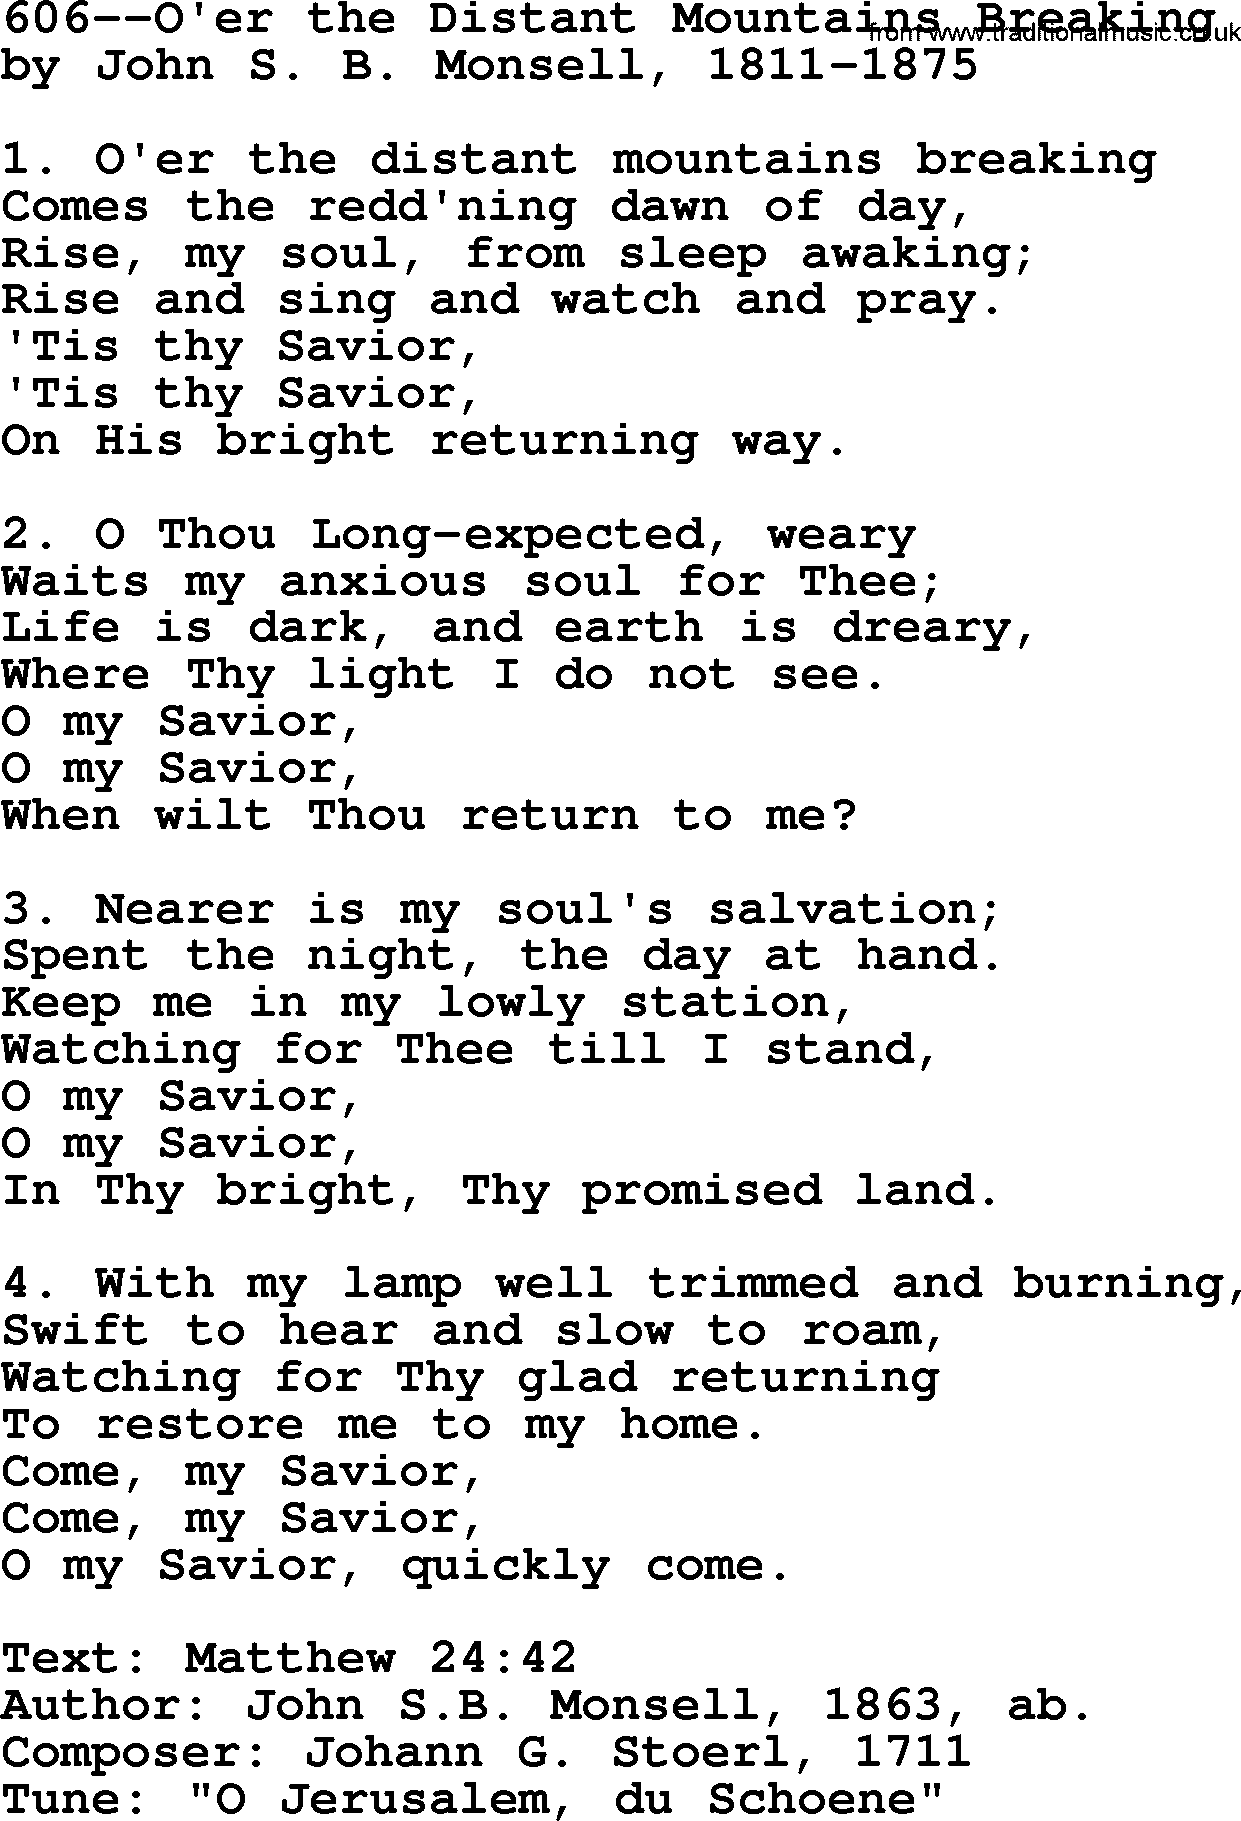 Lutheran Hymn: 606--O'er the Distant Mountains Breaking.txt lyrics with PDF